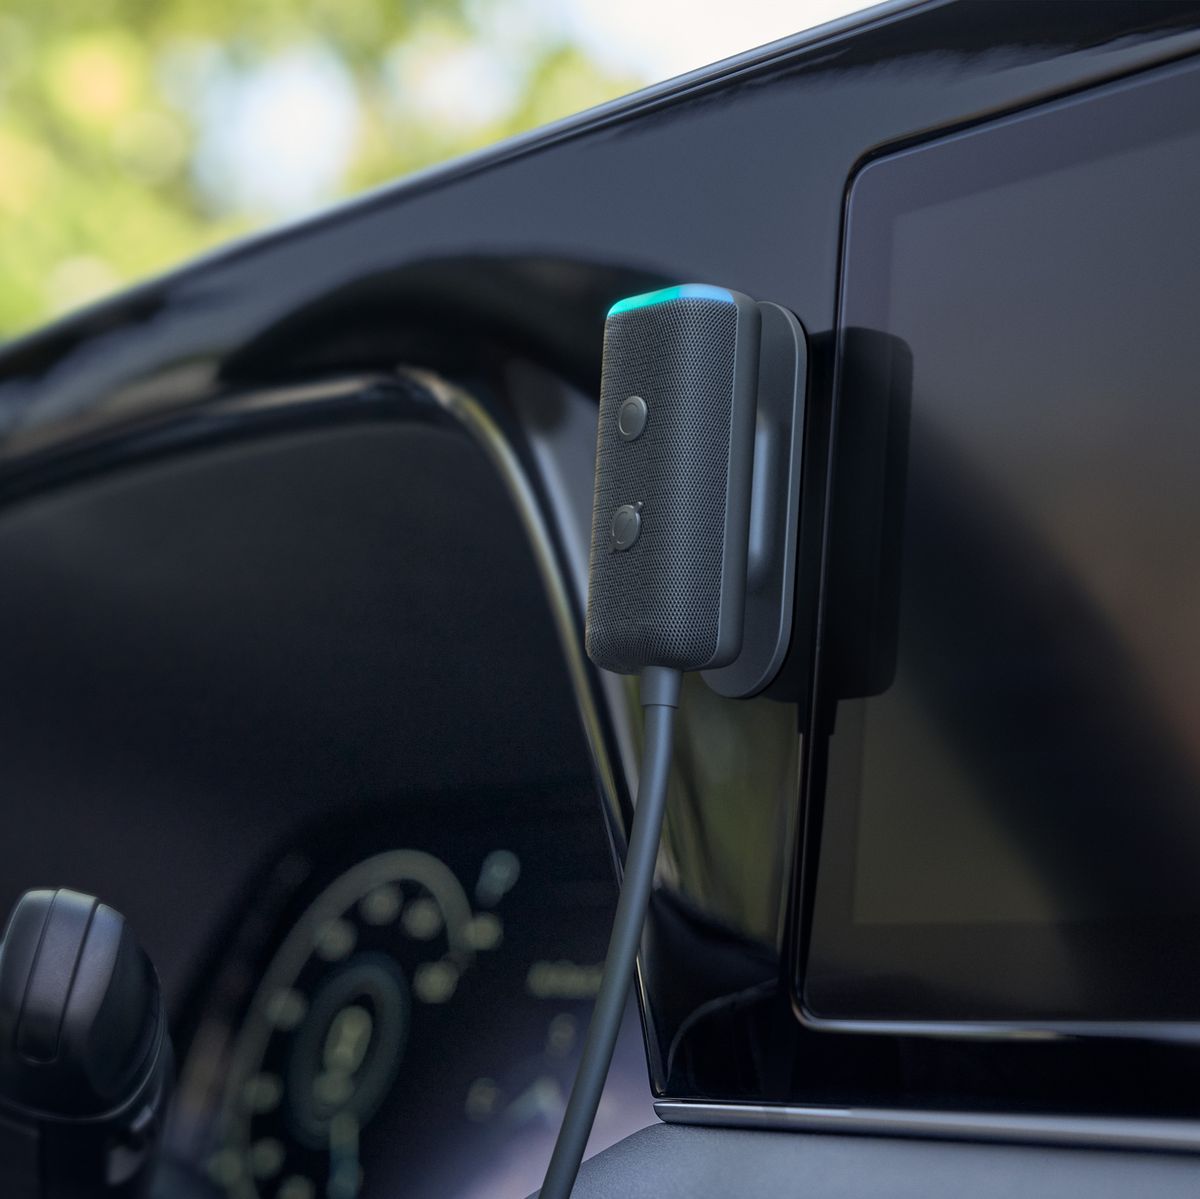 Echo Auto ameniza la conducción con Alexa